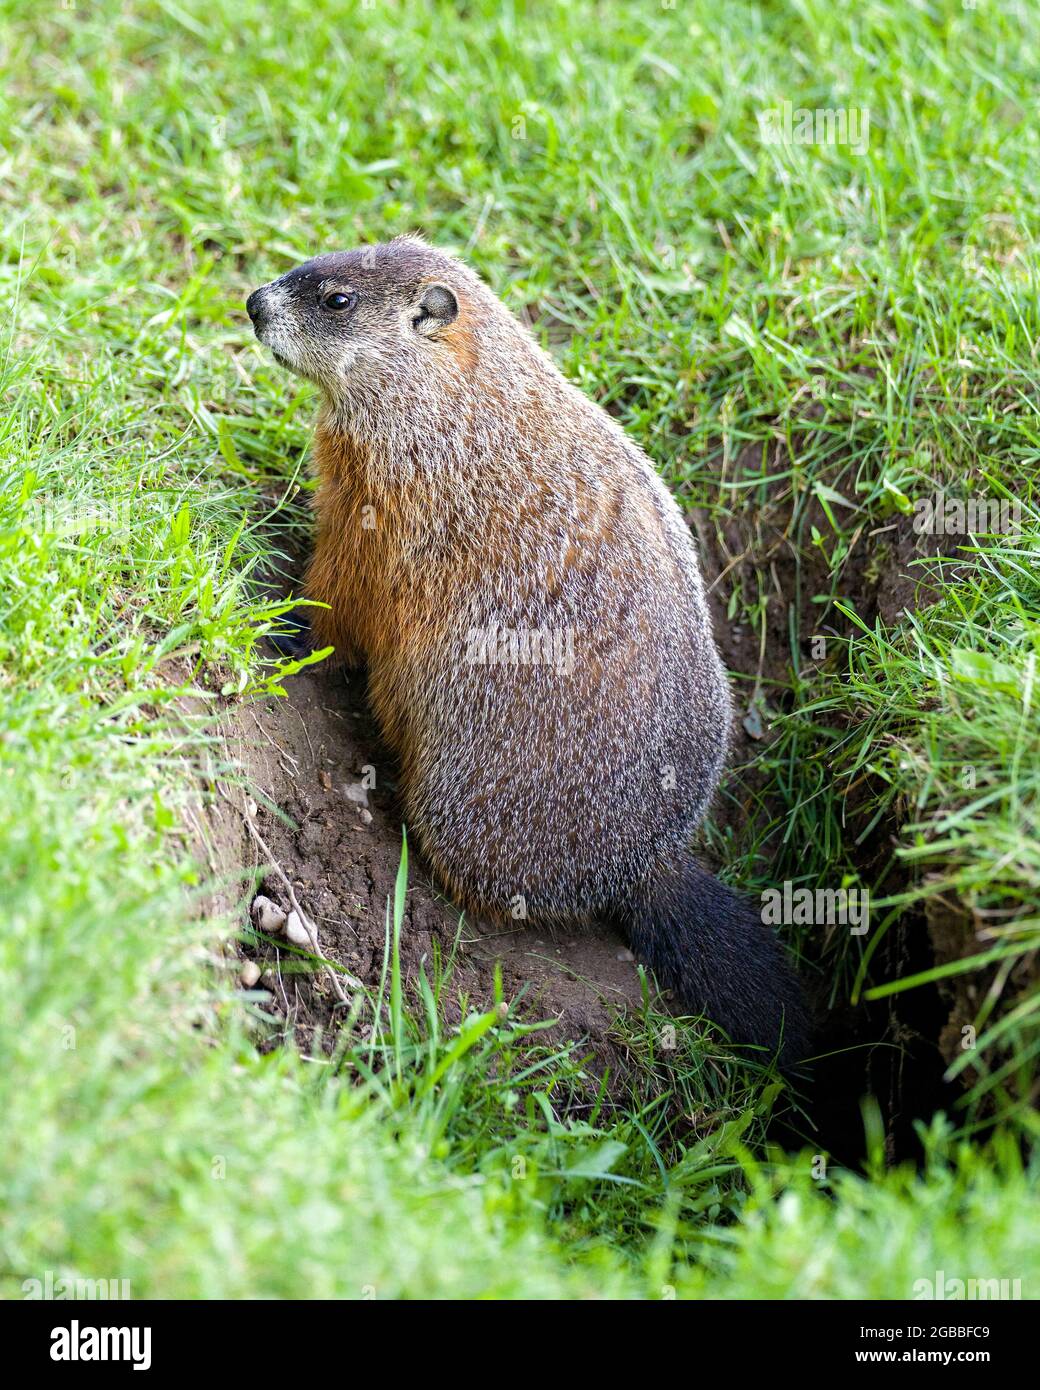 Groundhog close-up Profil Seitenansicht sitzt am Eingang des Bauches mit Gras Hintergrund in seiner Umgebung und Umgebung Lebensraum. Stockfoto